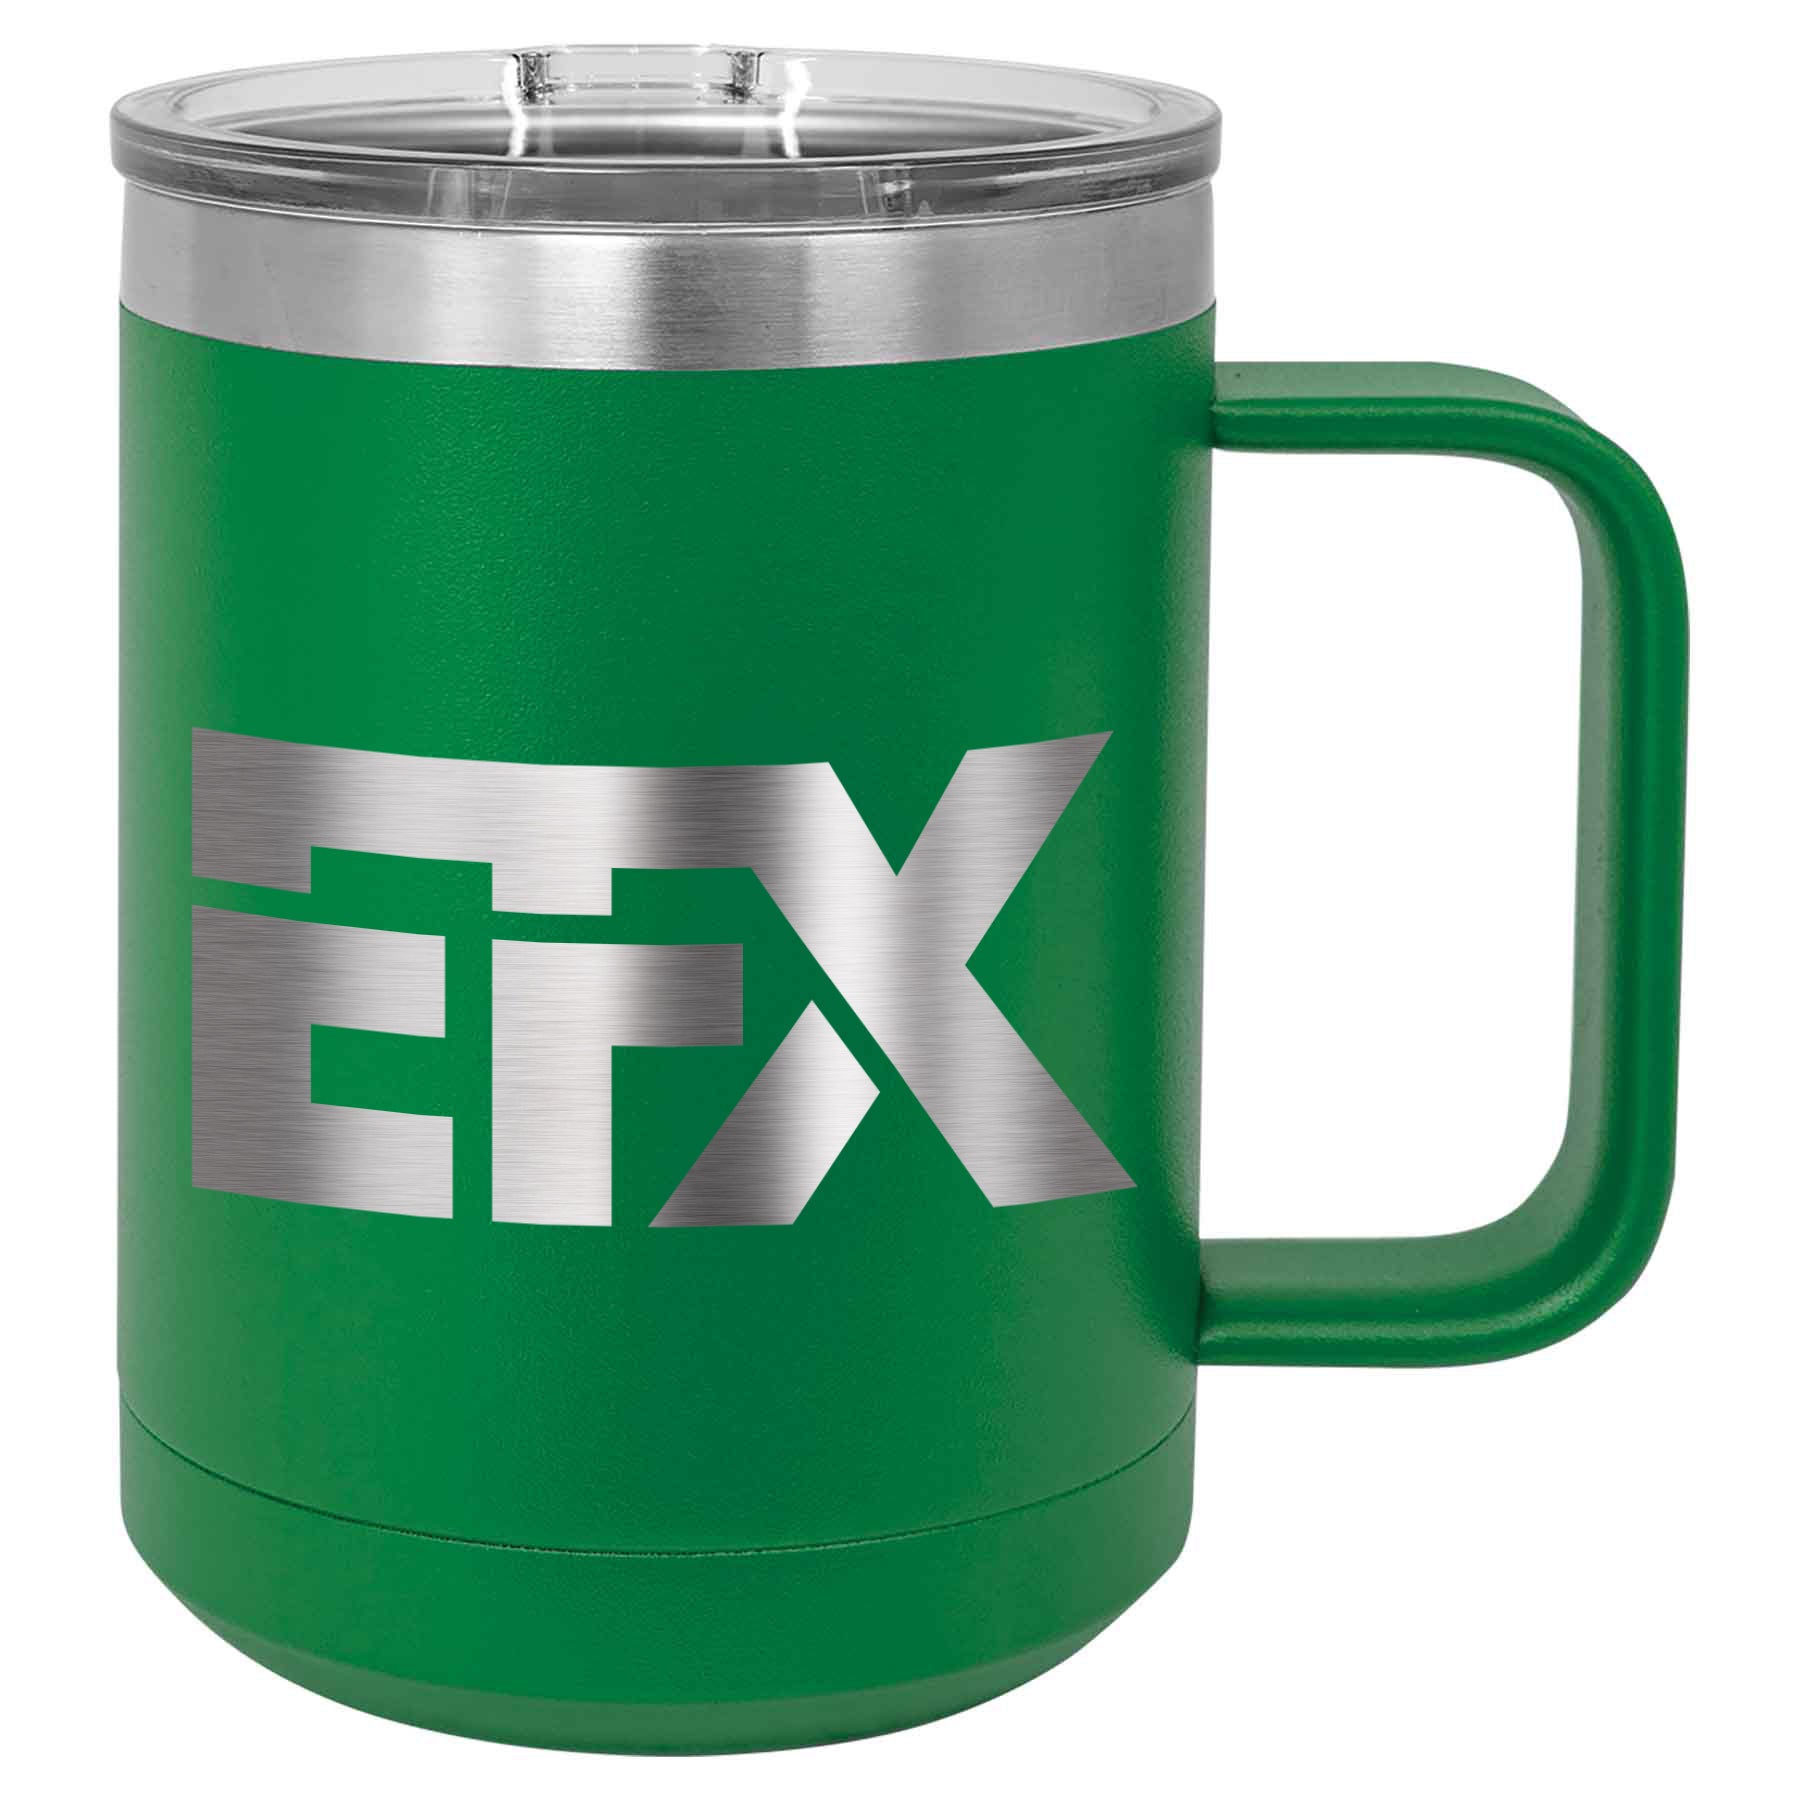 Logo-Short-Stainless on Green Coffee Mug Tumbler